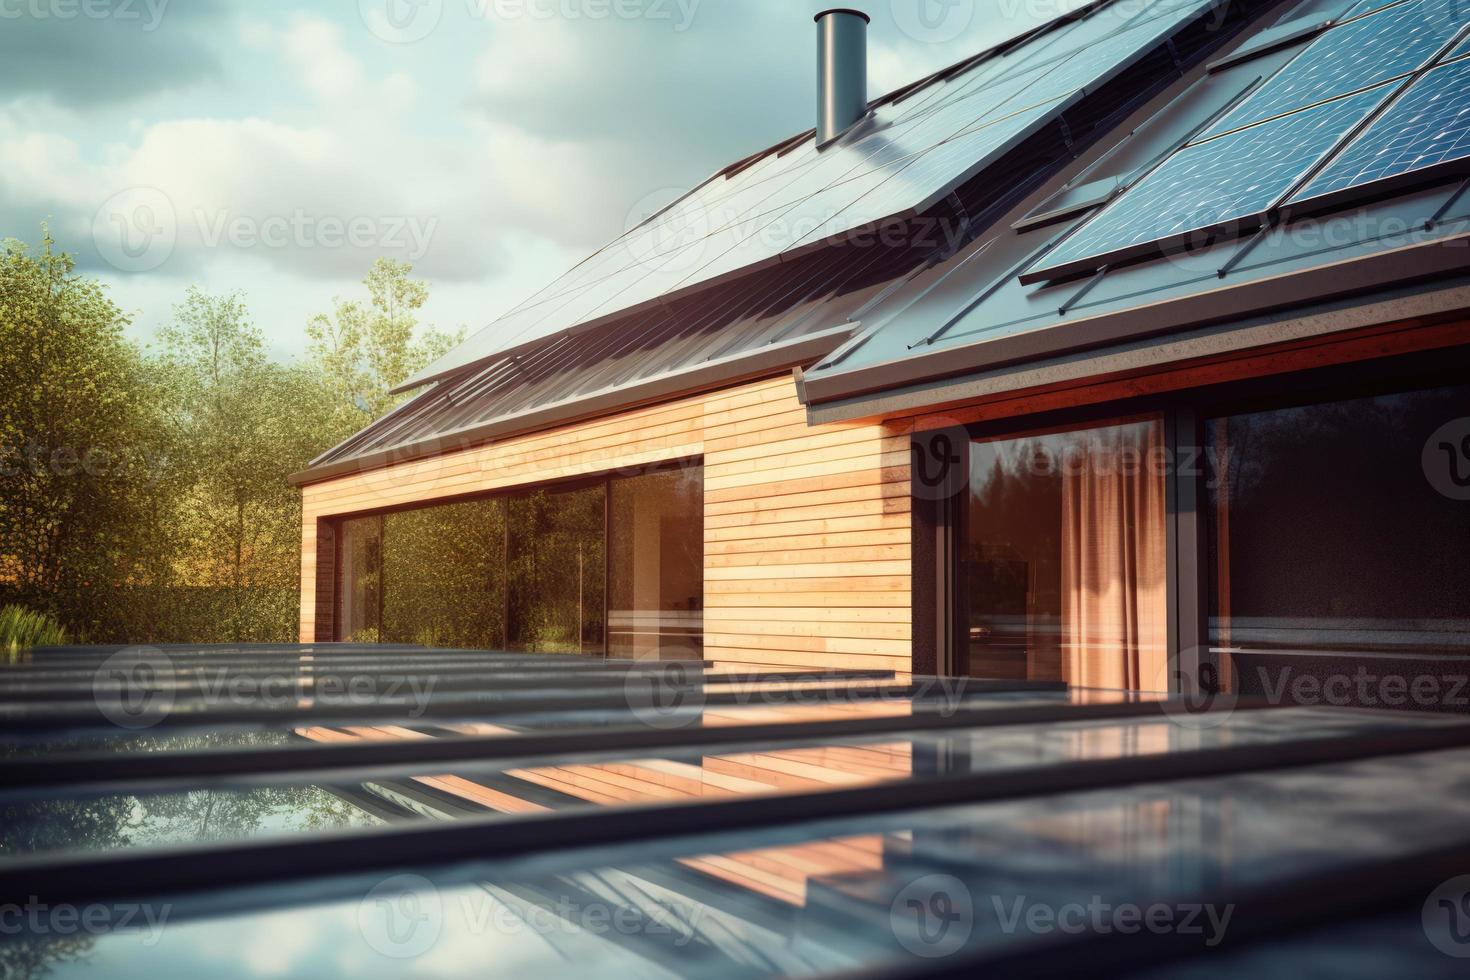 fotorealistisch Solar- Paneele Eingerichtet auf das Dach von ein modern Haus, betonen das verwenden von Alternative Energie zum ein nachhaltig Zukunft. foto